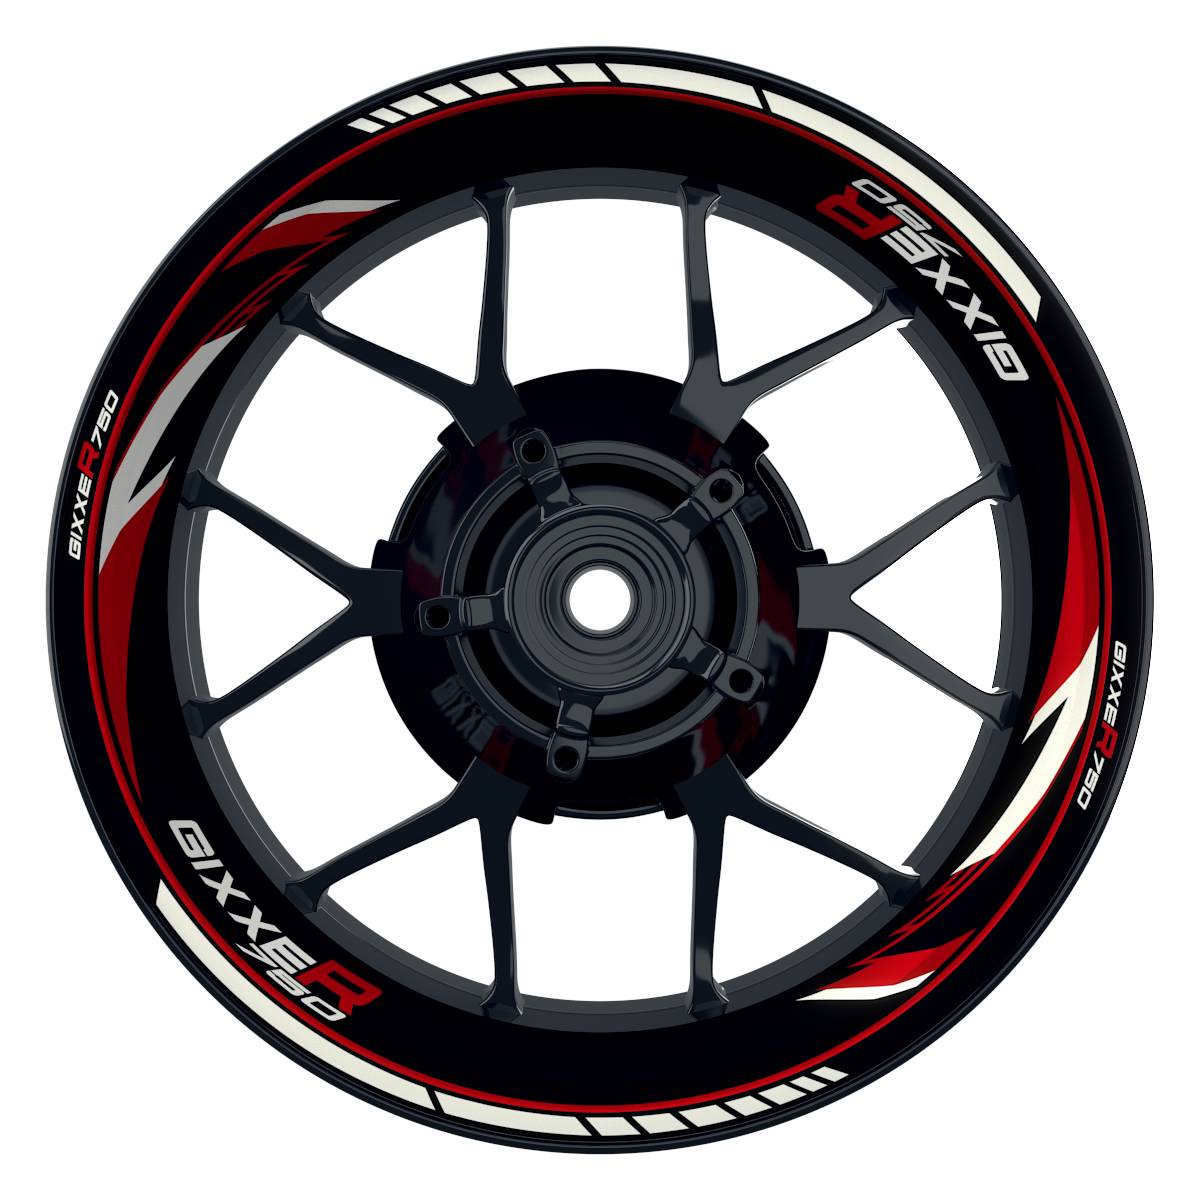 GIXXER750 Razor schwarz rot Wheelsticker Felgenaufkleber